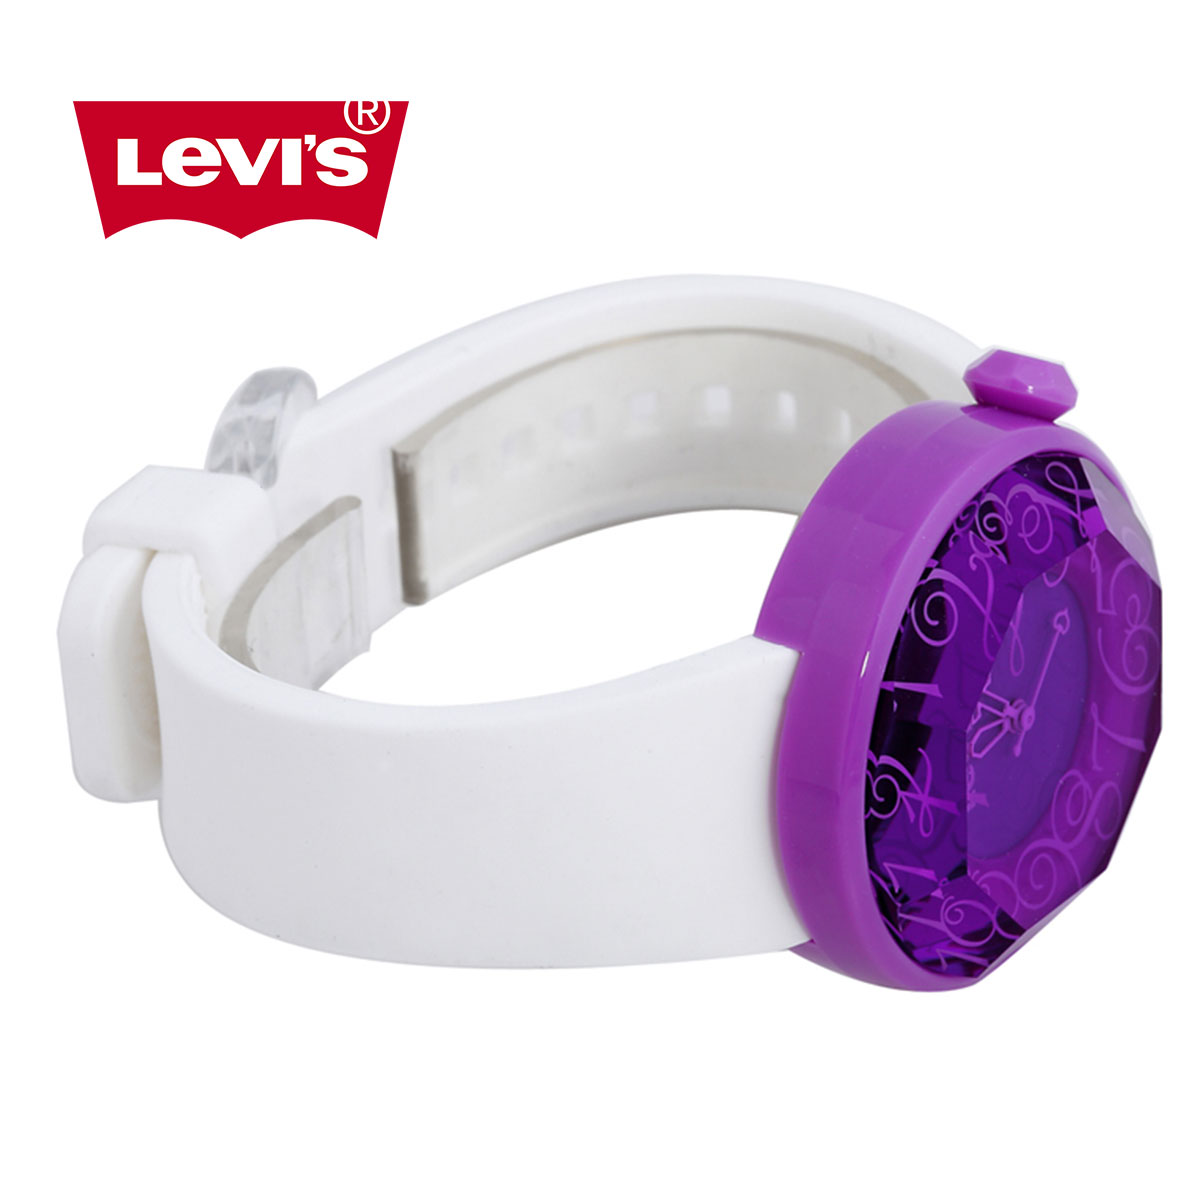 Đồng hồ nữ Levis LTG0210 mặt thạch anh nổi bật